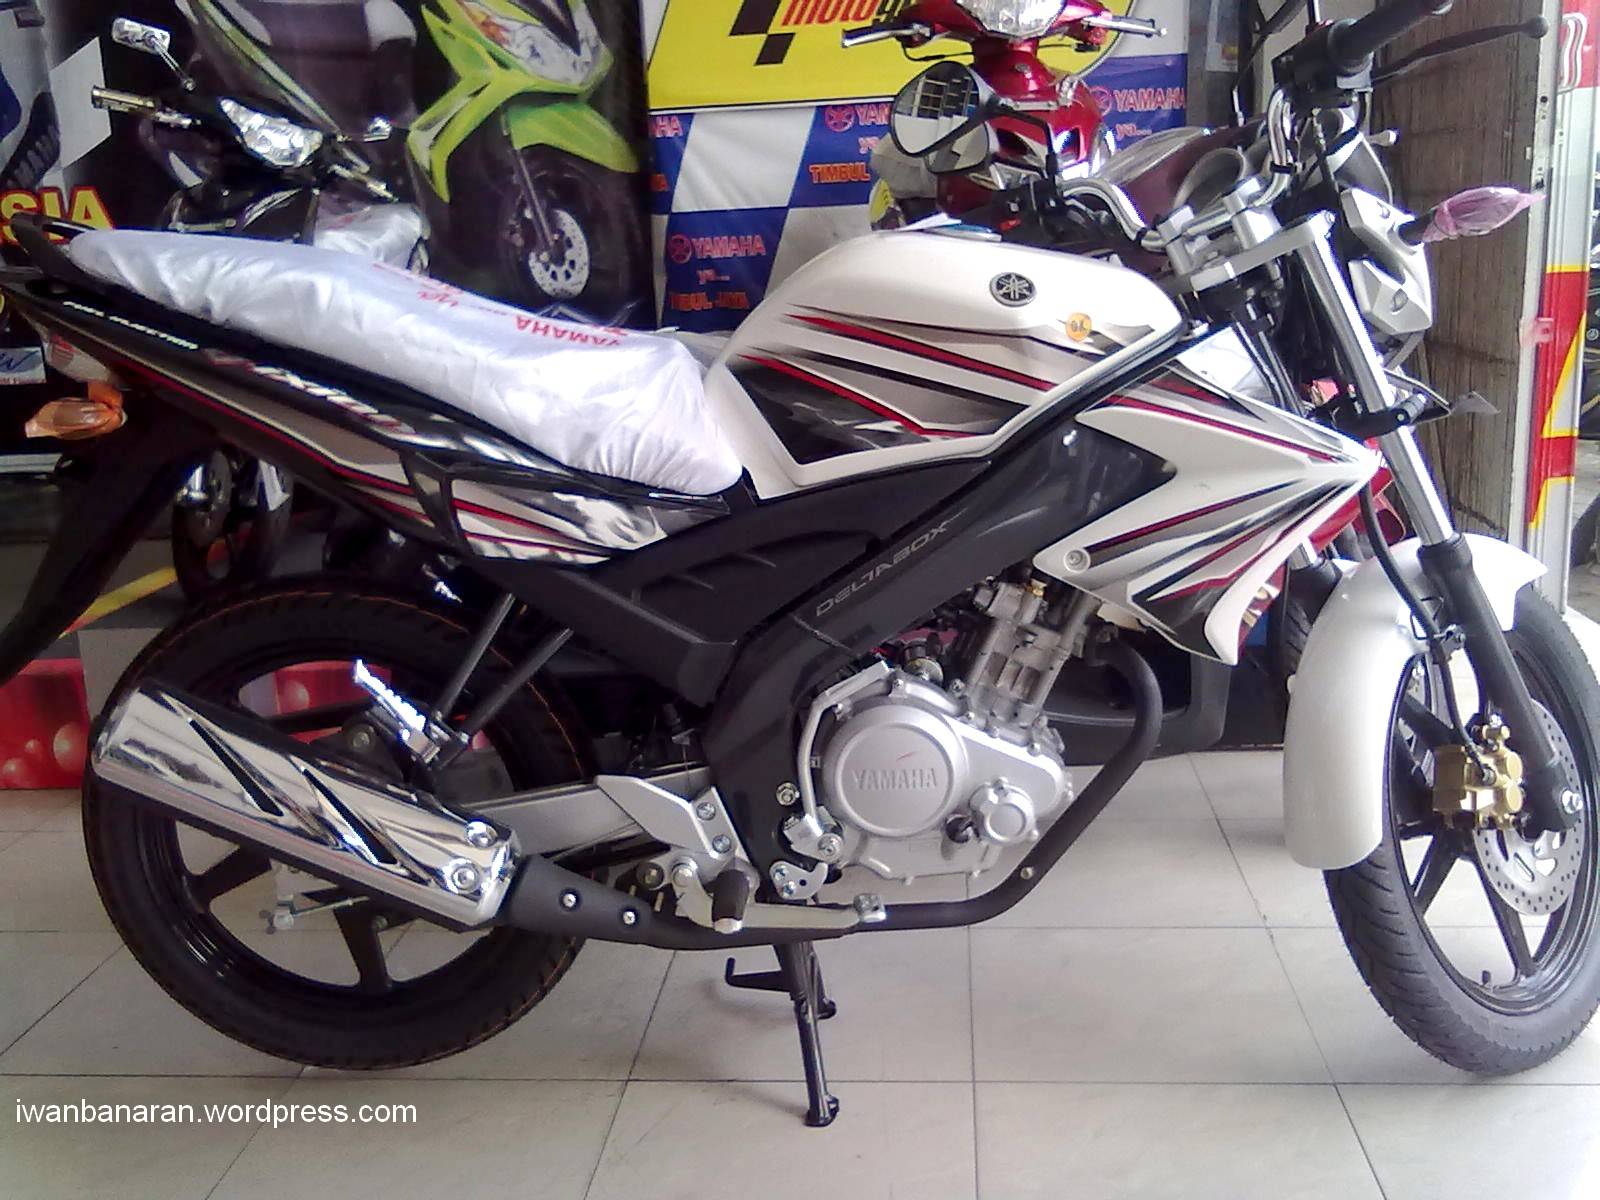 Download Koleksi Modifikasi Motor New Vixion Putih Abu Abu Terbaru